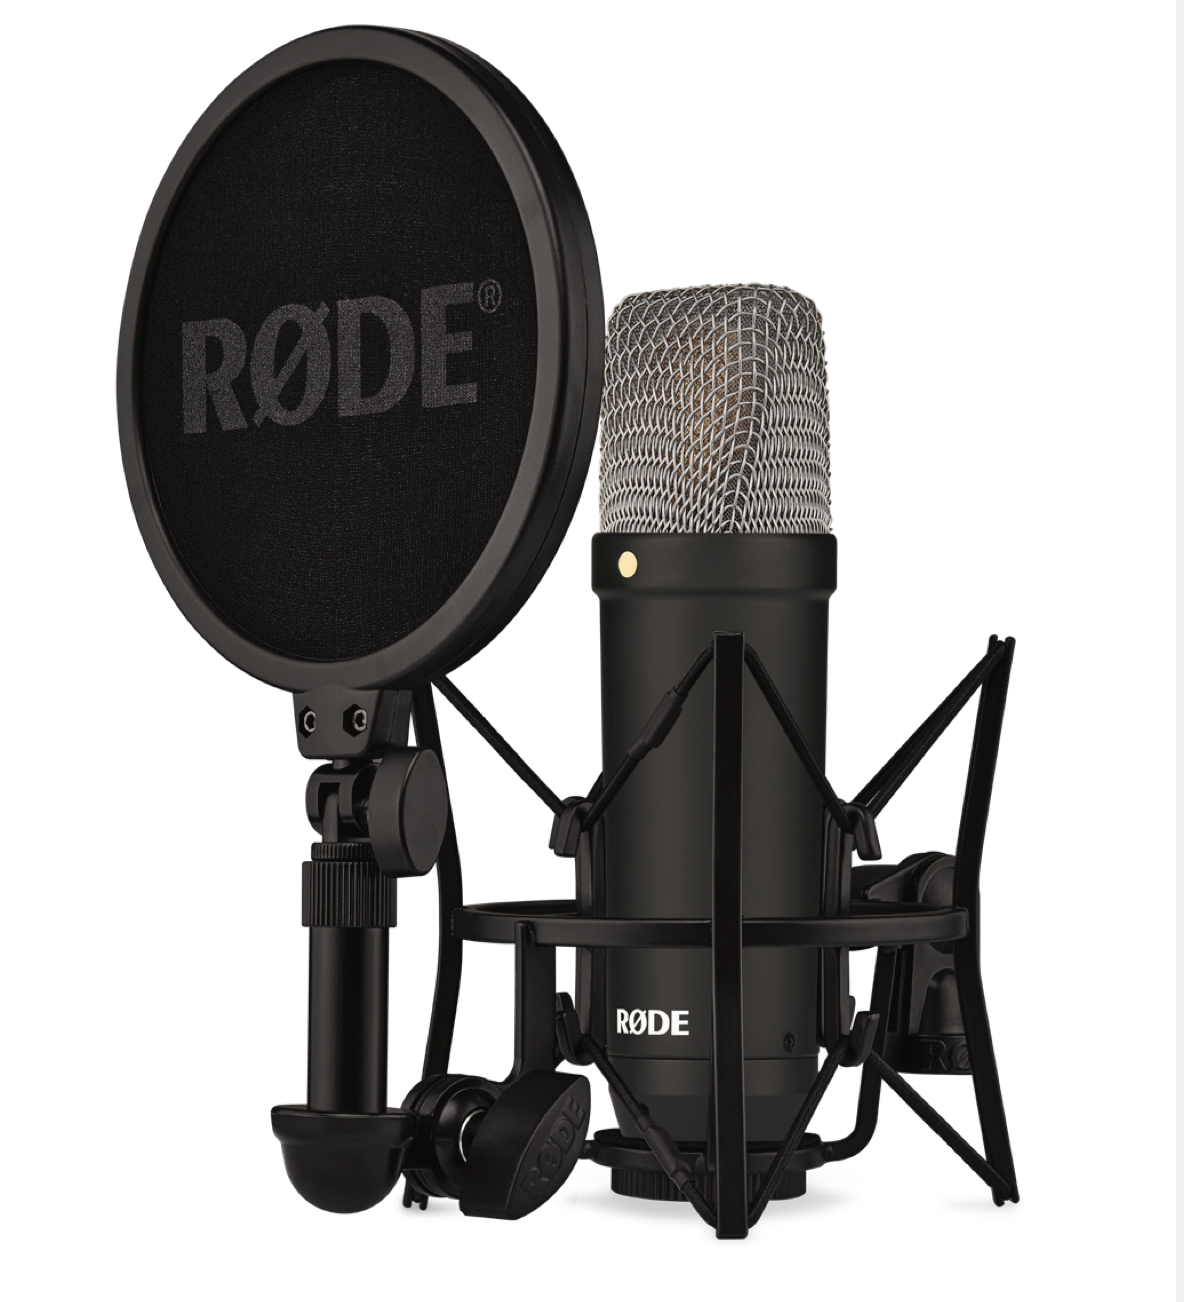 Микрофон Rode NT1 Signature Black - черный микрофон с высокой чувствительностью